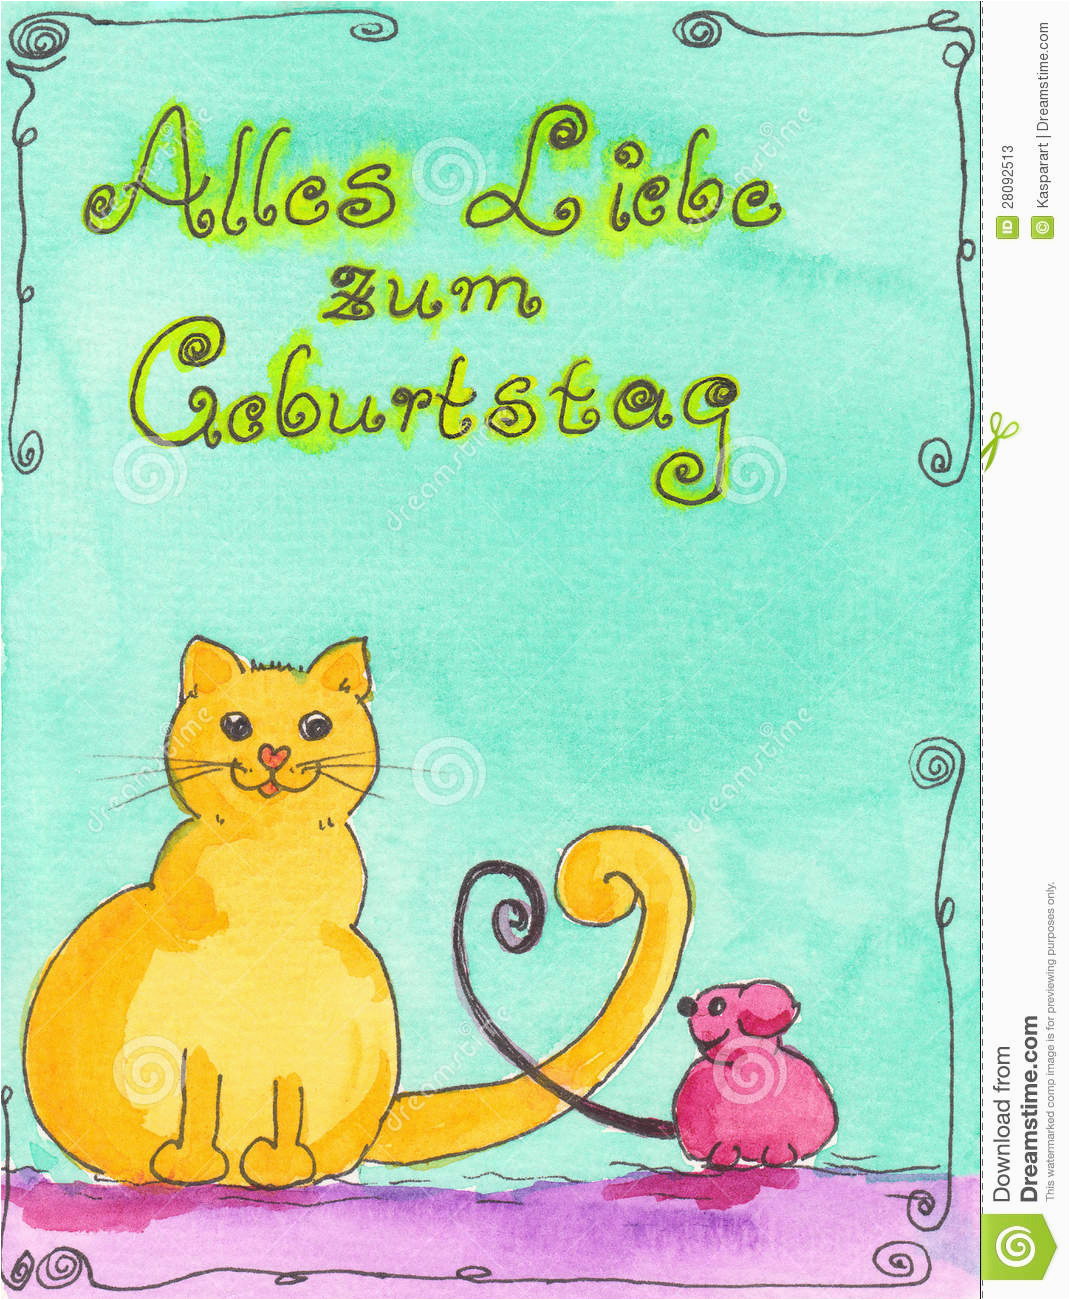 stock photos birthday card german language image28092513